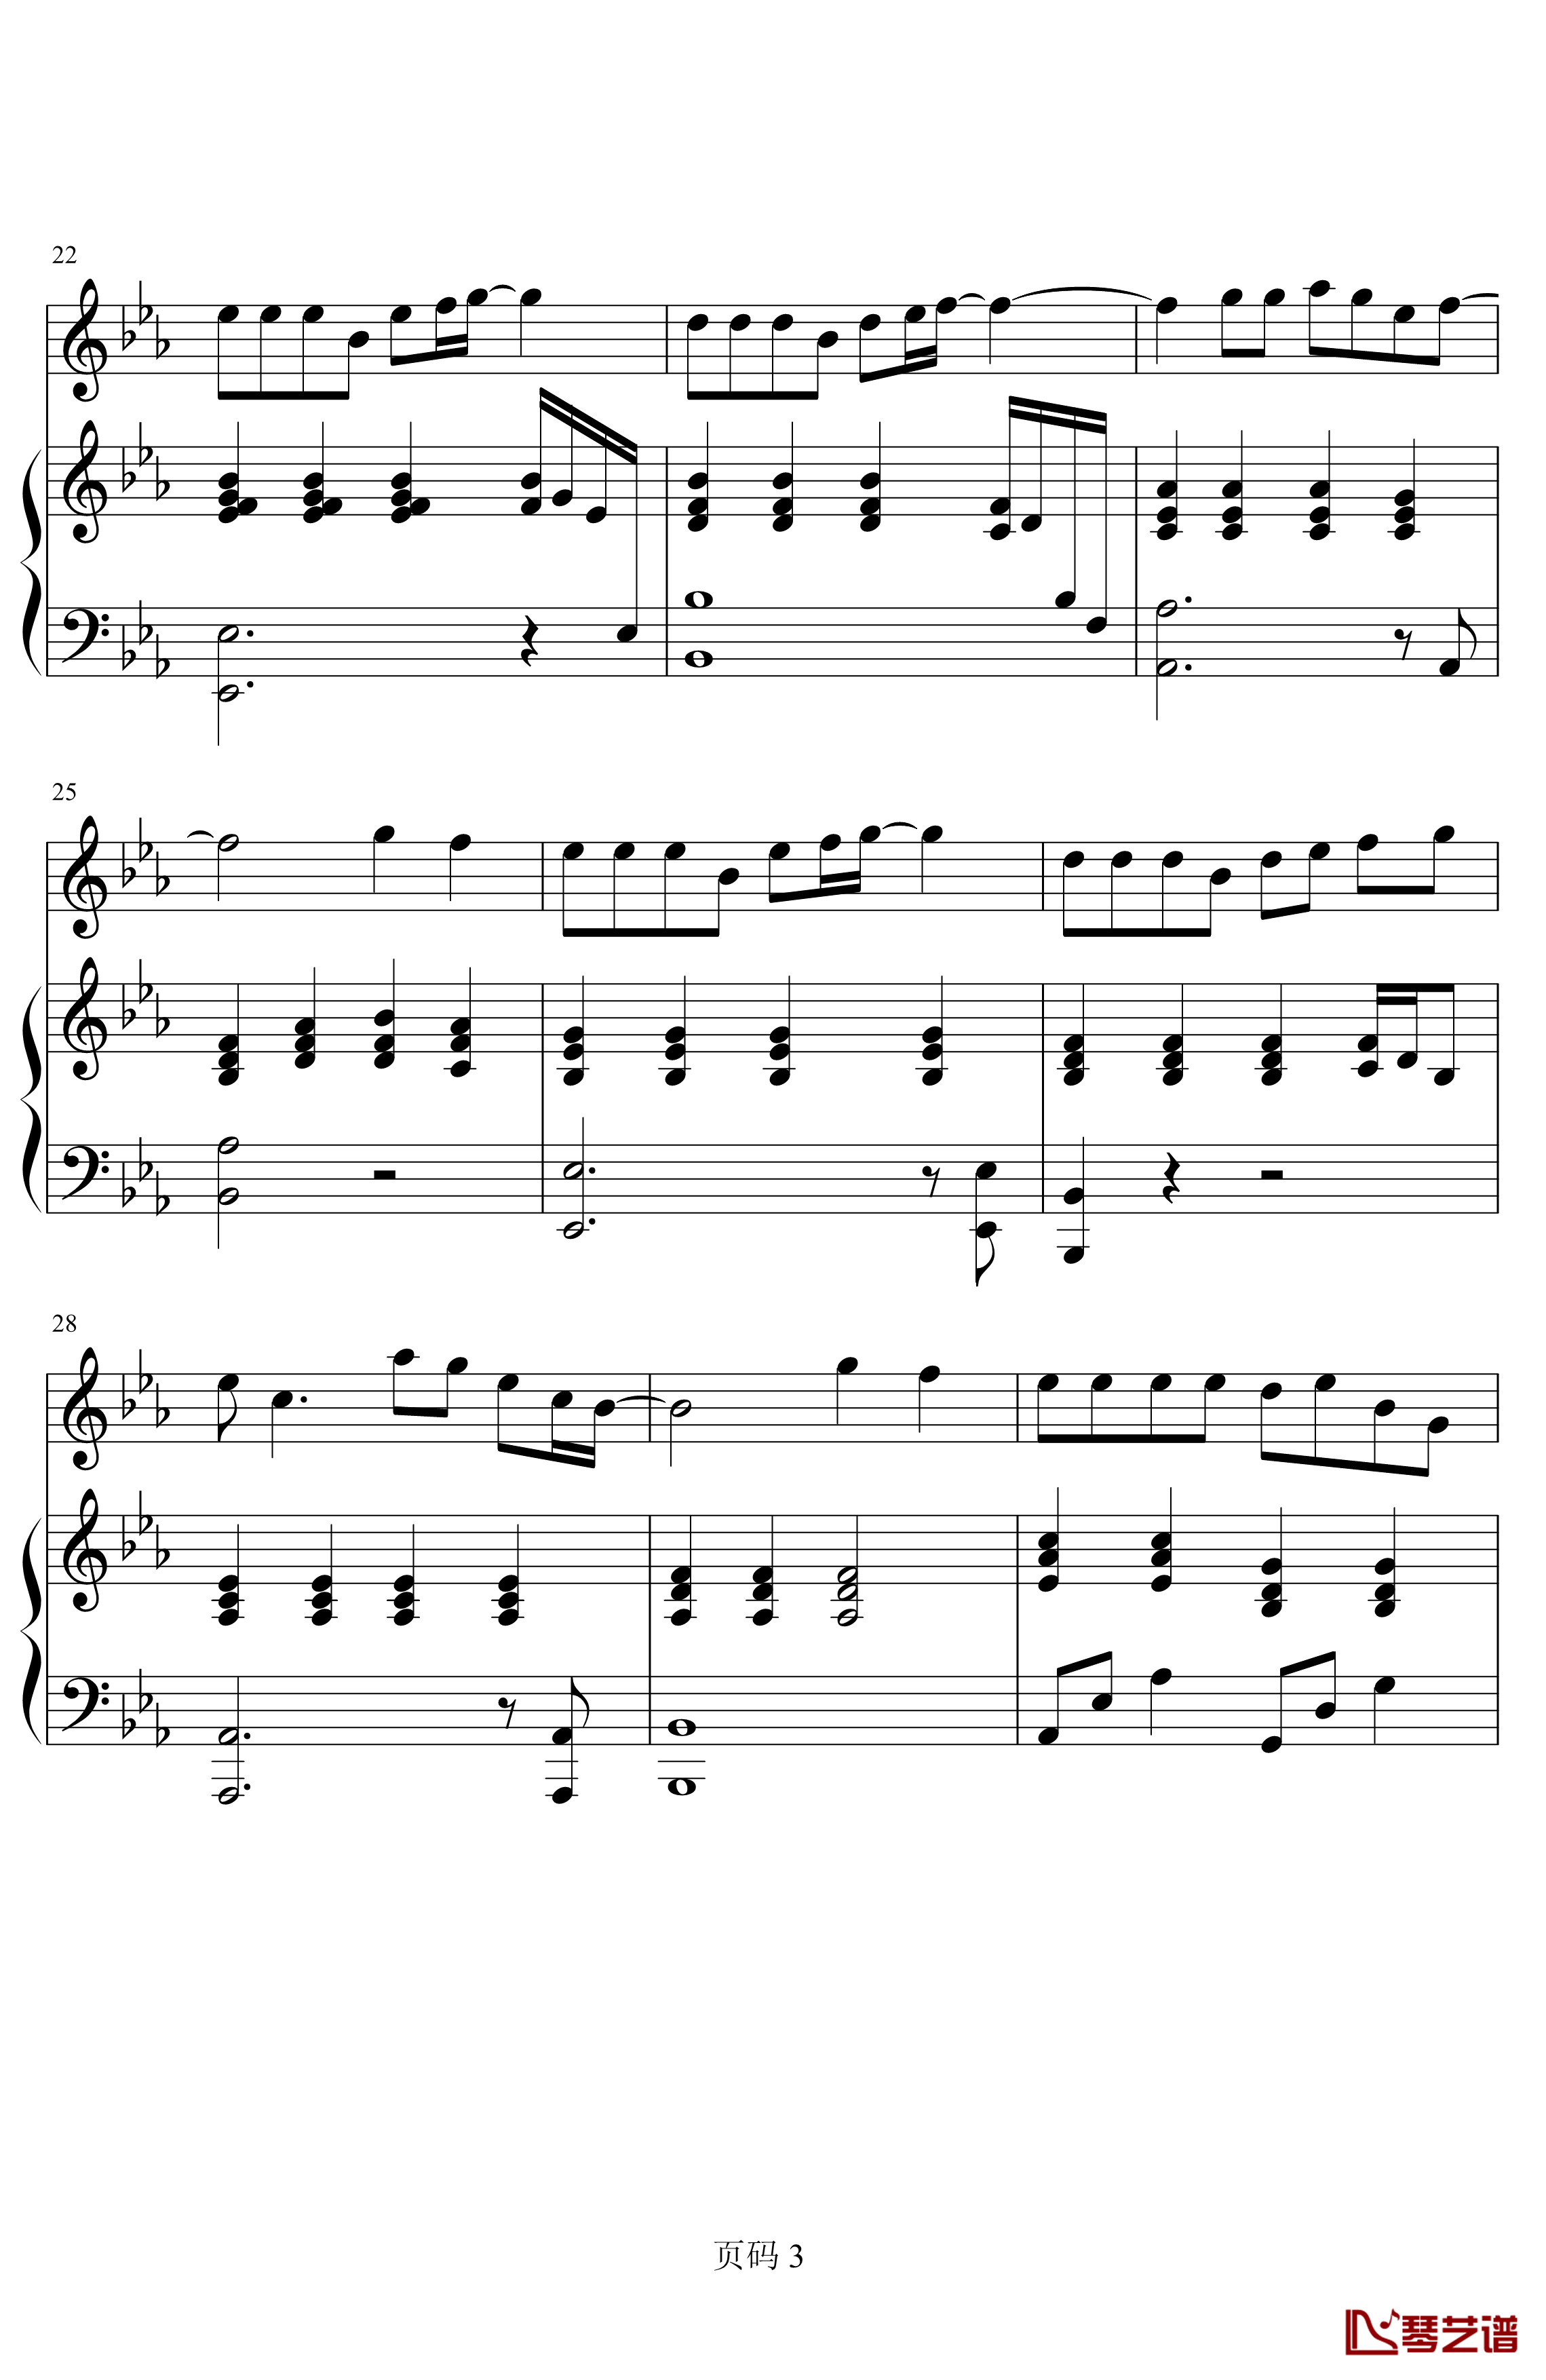 唯一钢琴谱-简化-王力宏3